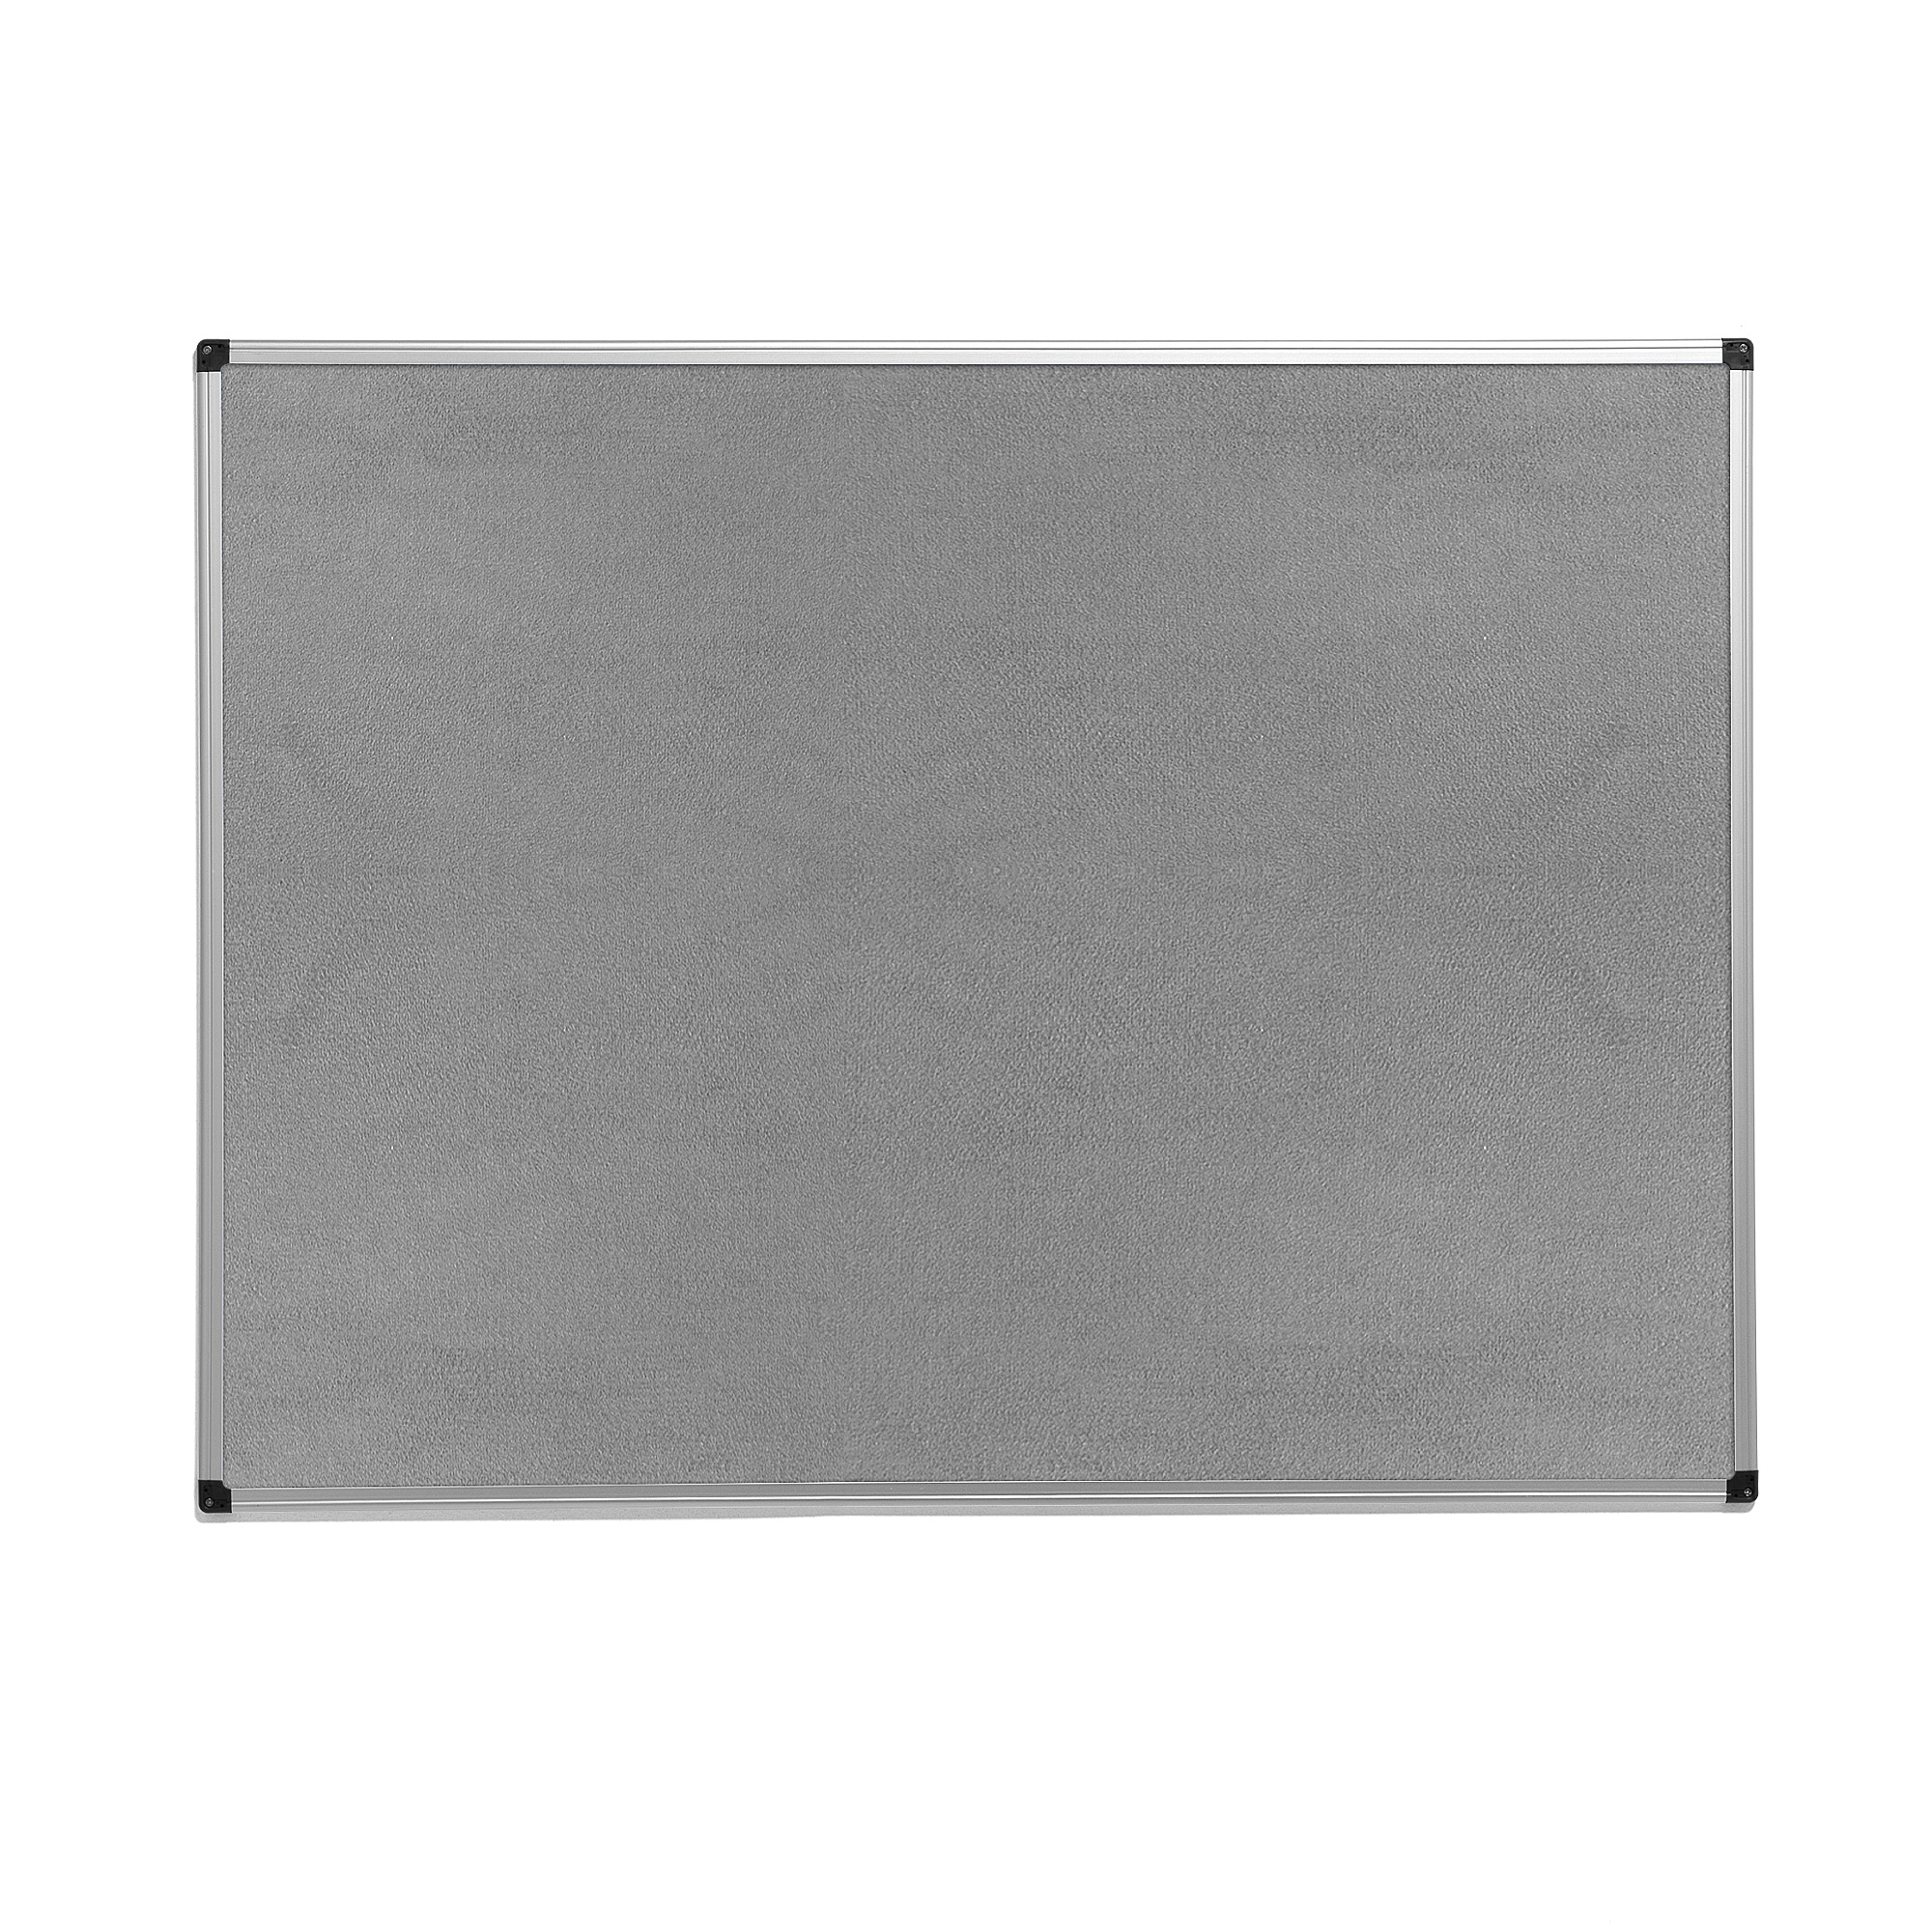 Nástěnka MARIA, 1200x900 mm, šedá, hliníkový rám